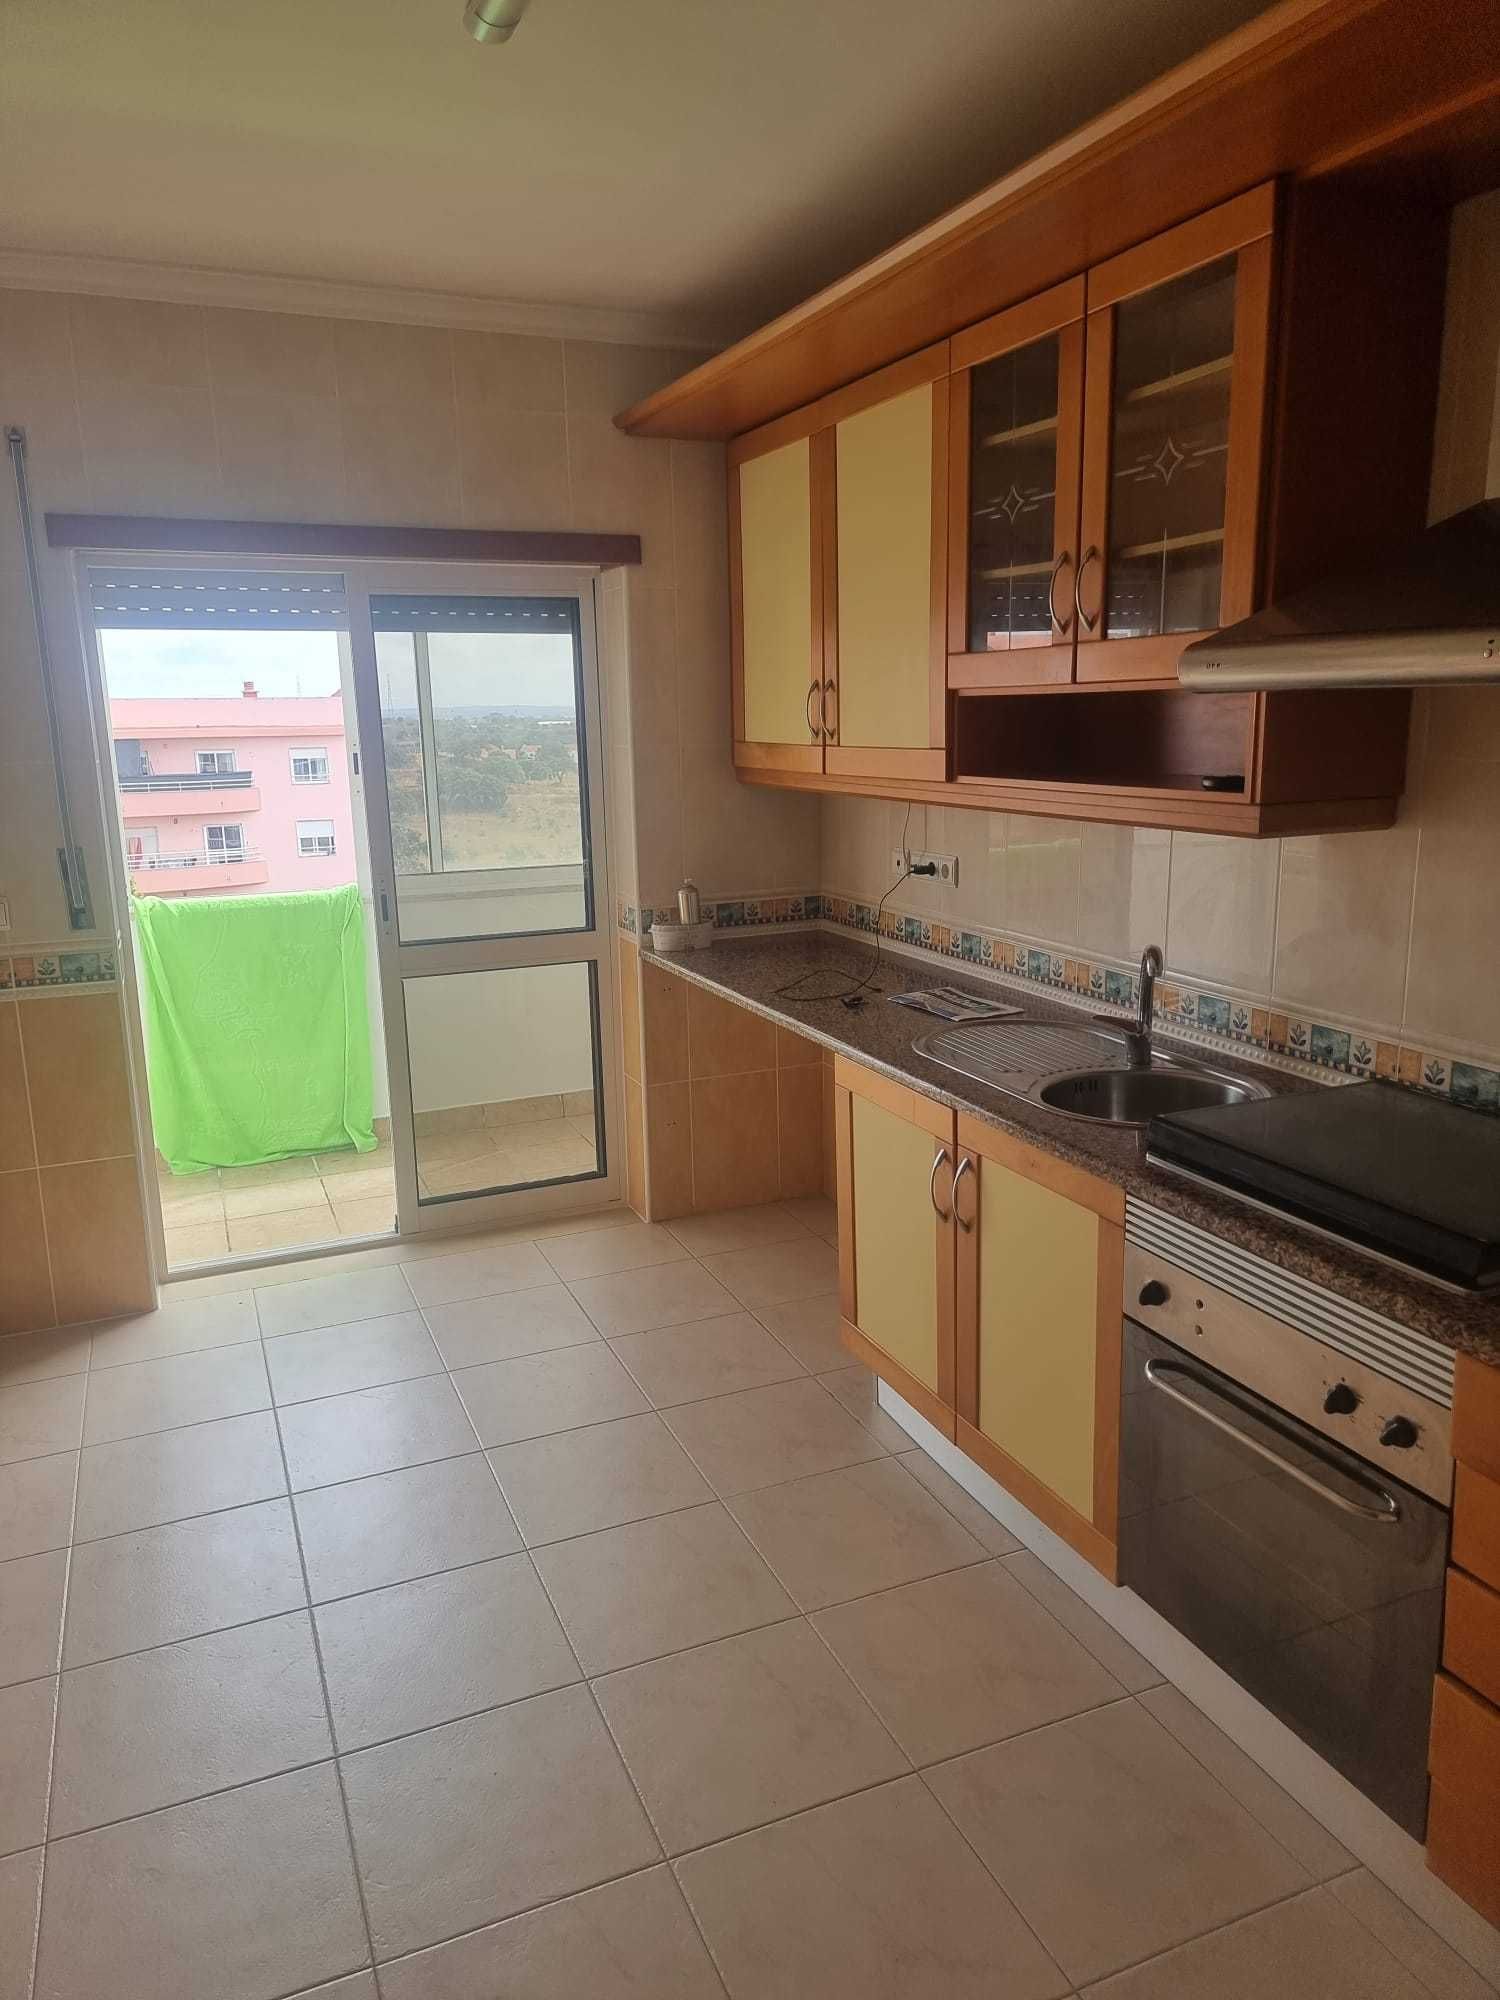 Simpático Apartamento T2 situado na zona Vale do Cobro, Setúbal.